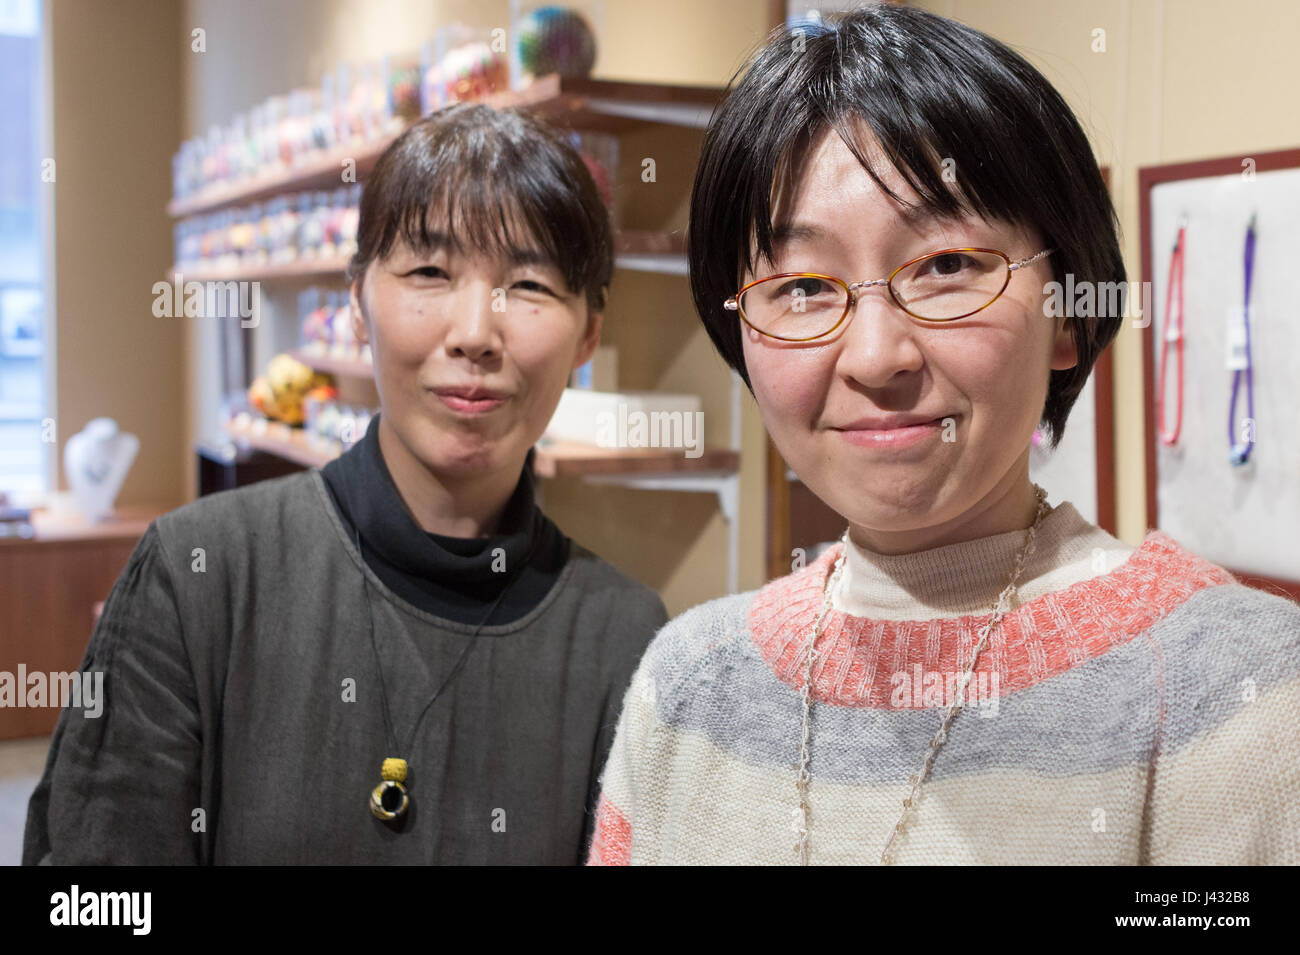 Kanazawa, Giappone - marzo 30th, 2017: ritratto di due donna giapponese lavora in un kaga yubinuki negozio tradizionale dove fanno il ditale tradizionali Foto Stock